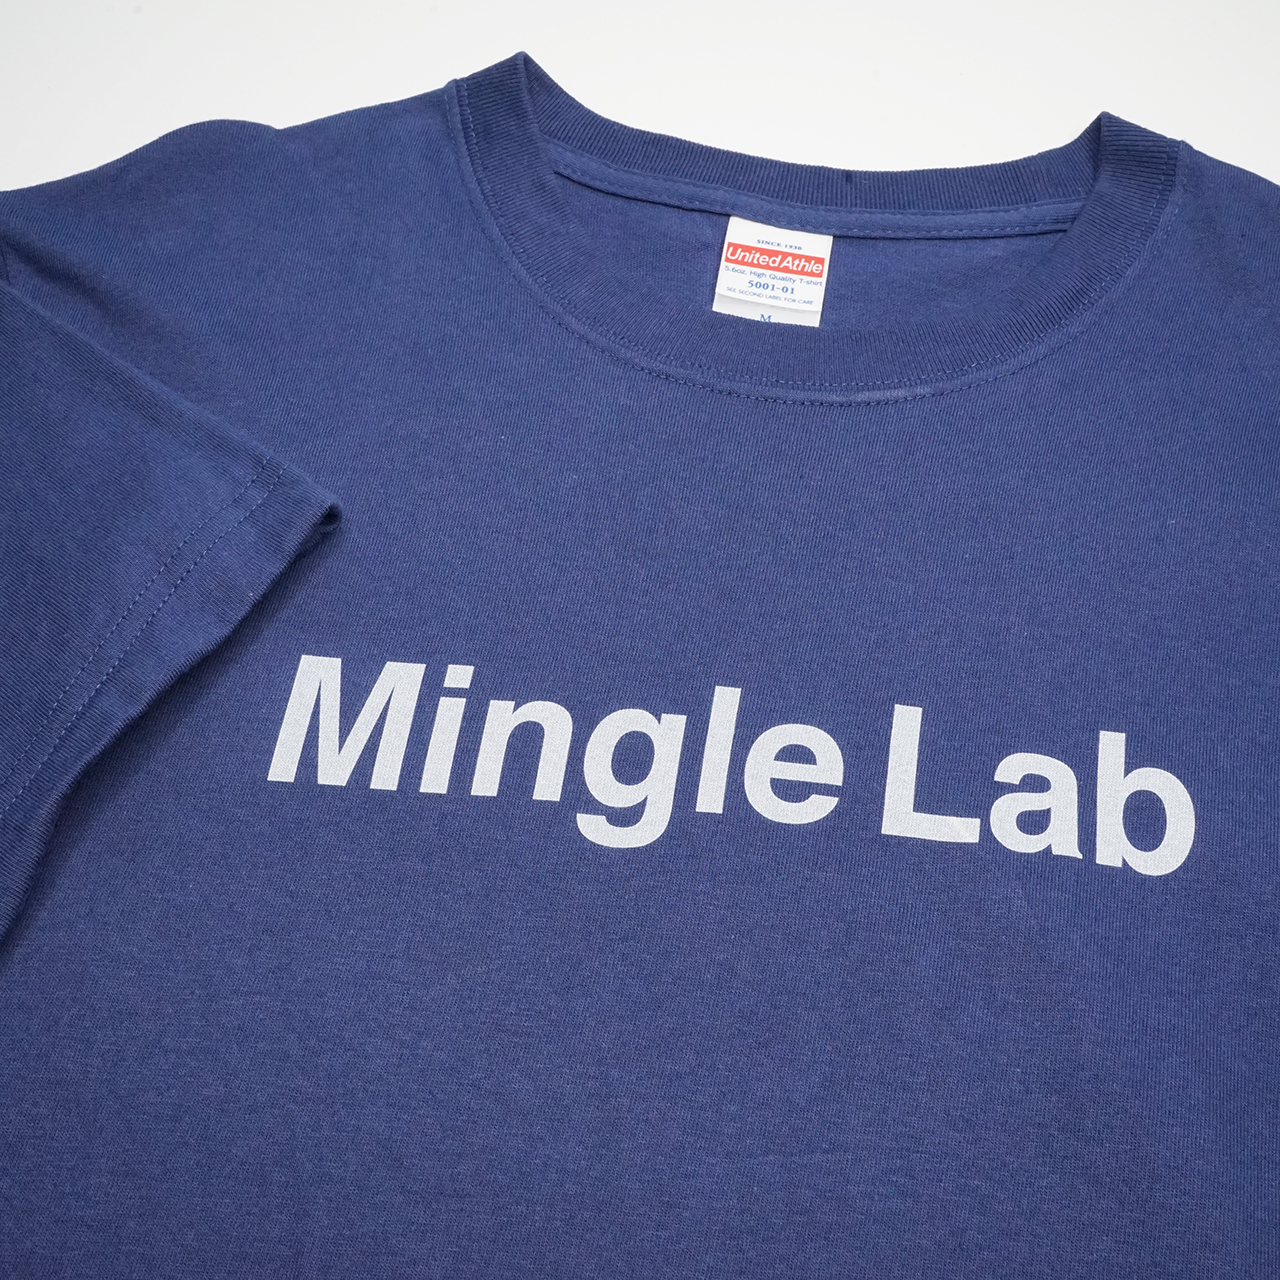 ガーメントプリンターで印刷したMingle lab.のロゴプリントTシャツ